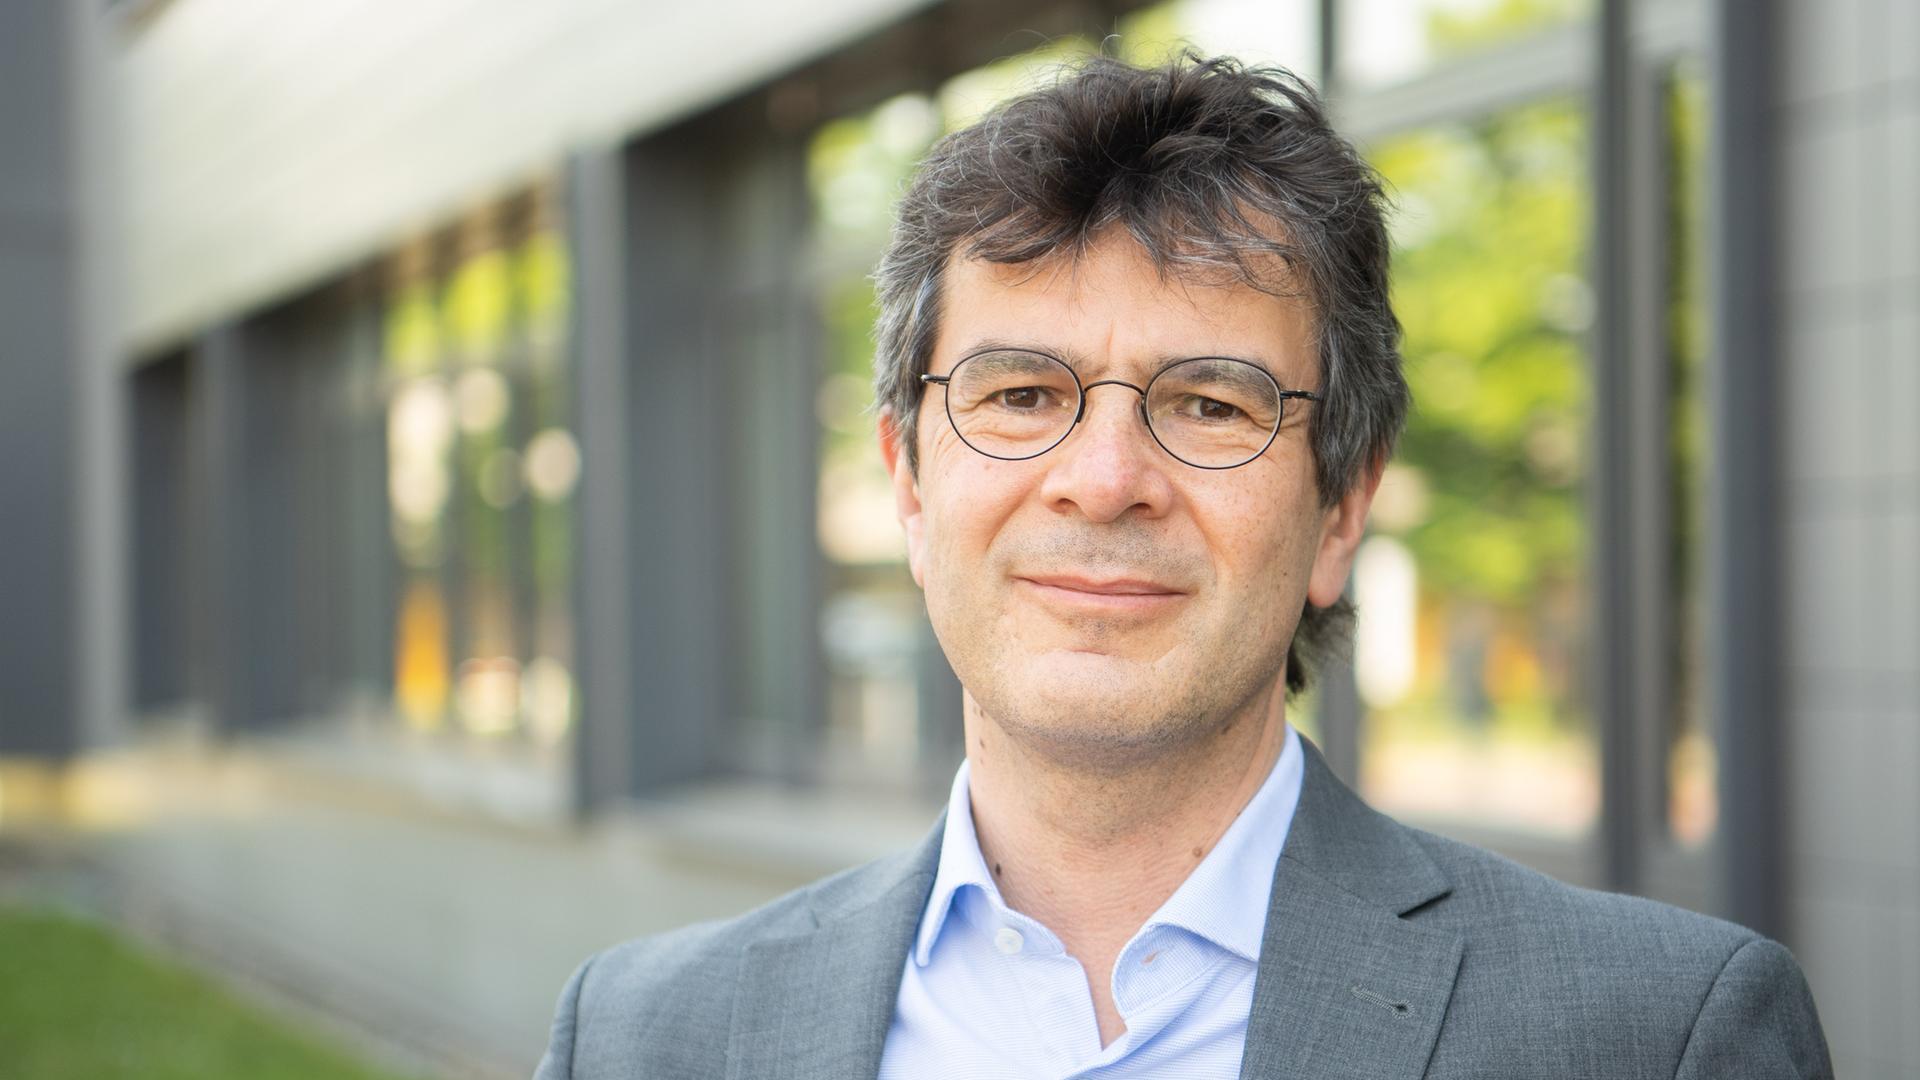 Gérard Krause, Abteilungsleiter Epidemiologie, steht am Helmholtz-Zentrum für Infektionsforschung in Braunschweig. Er lächelt und blickt in die Kamera.